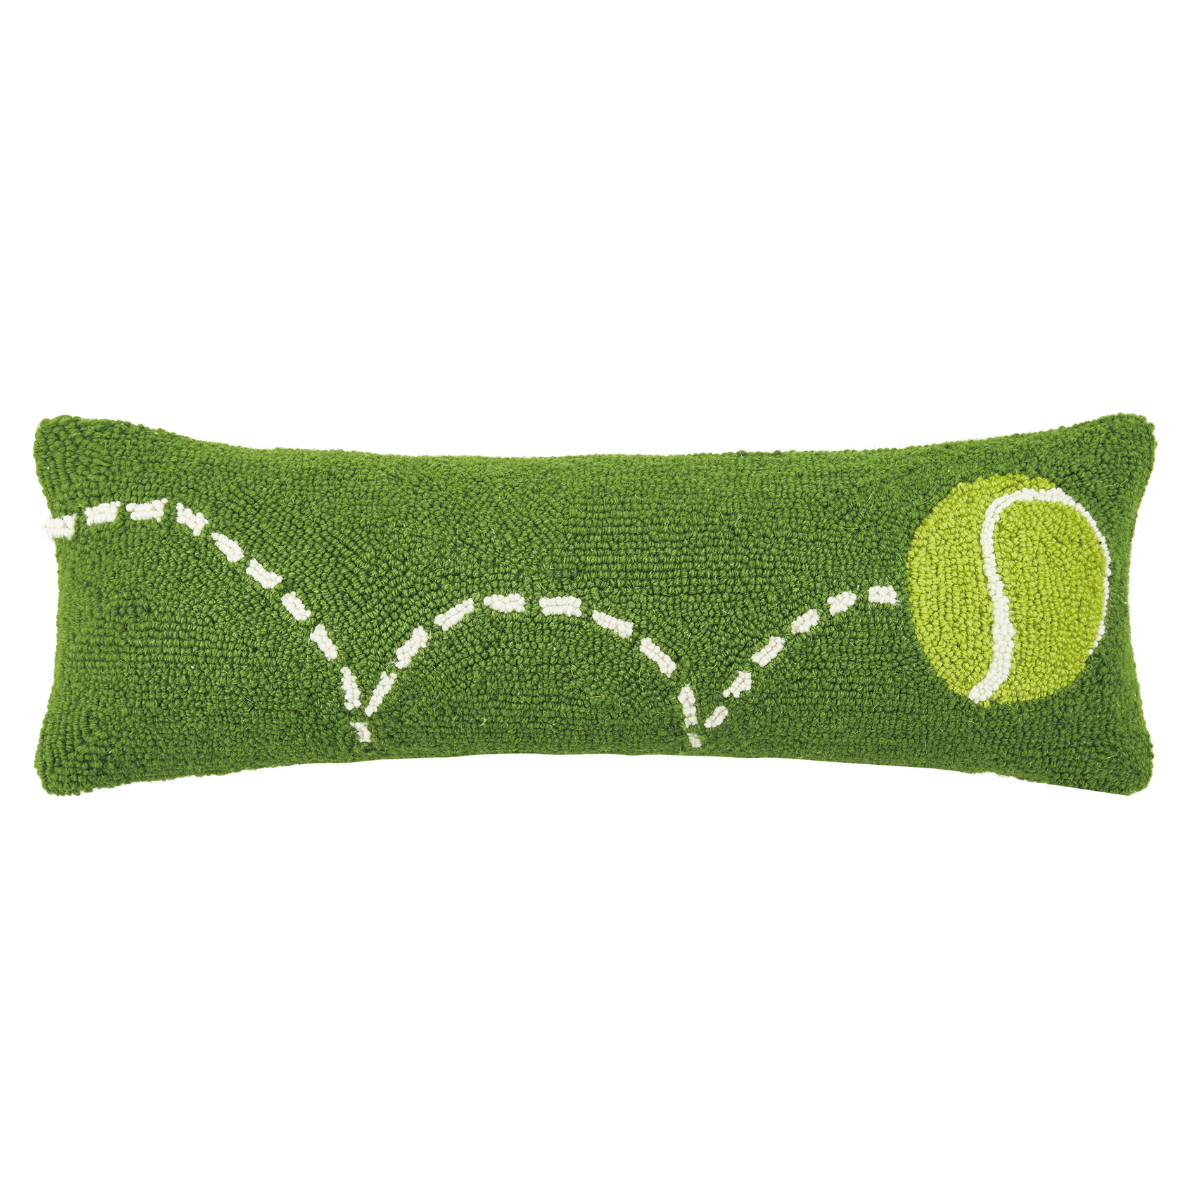 Tennis Ball Hooked Wool Lumbar Pillow